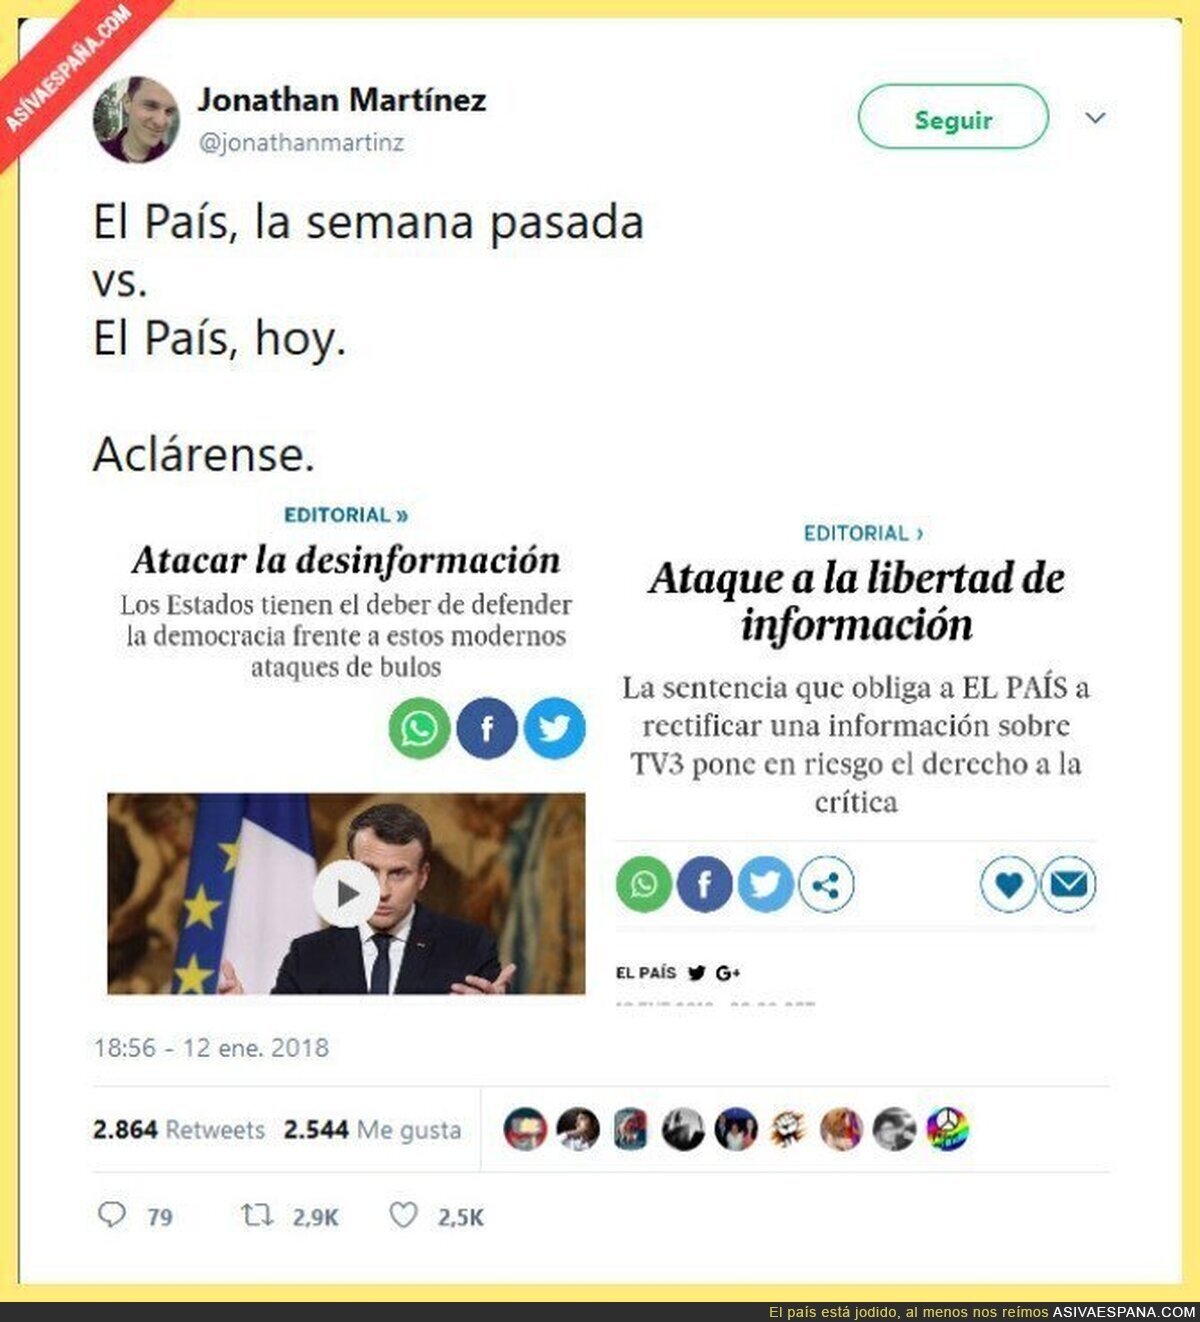 La difamación no es crítica, sino desinformación... señores de El País